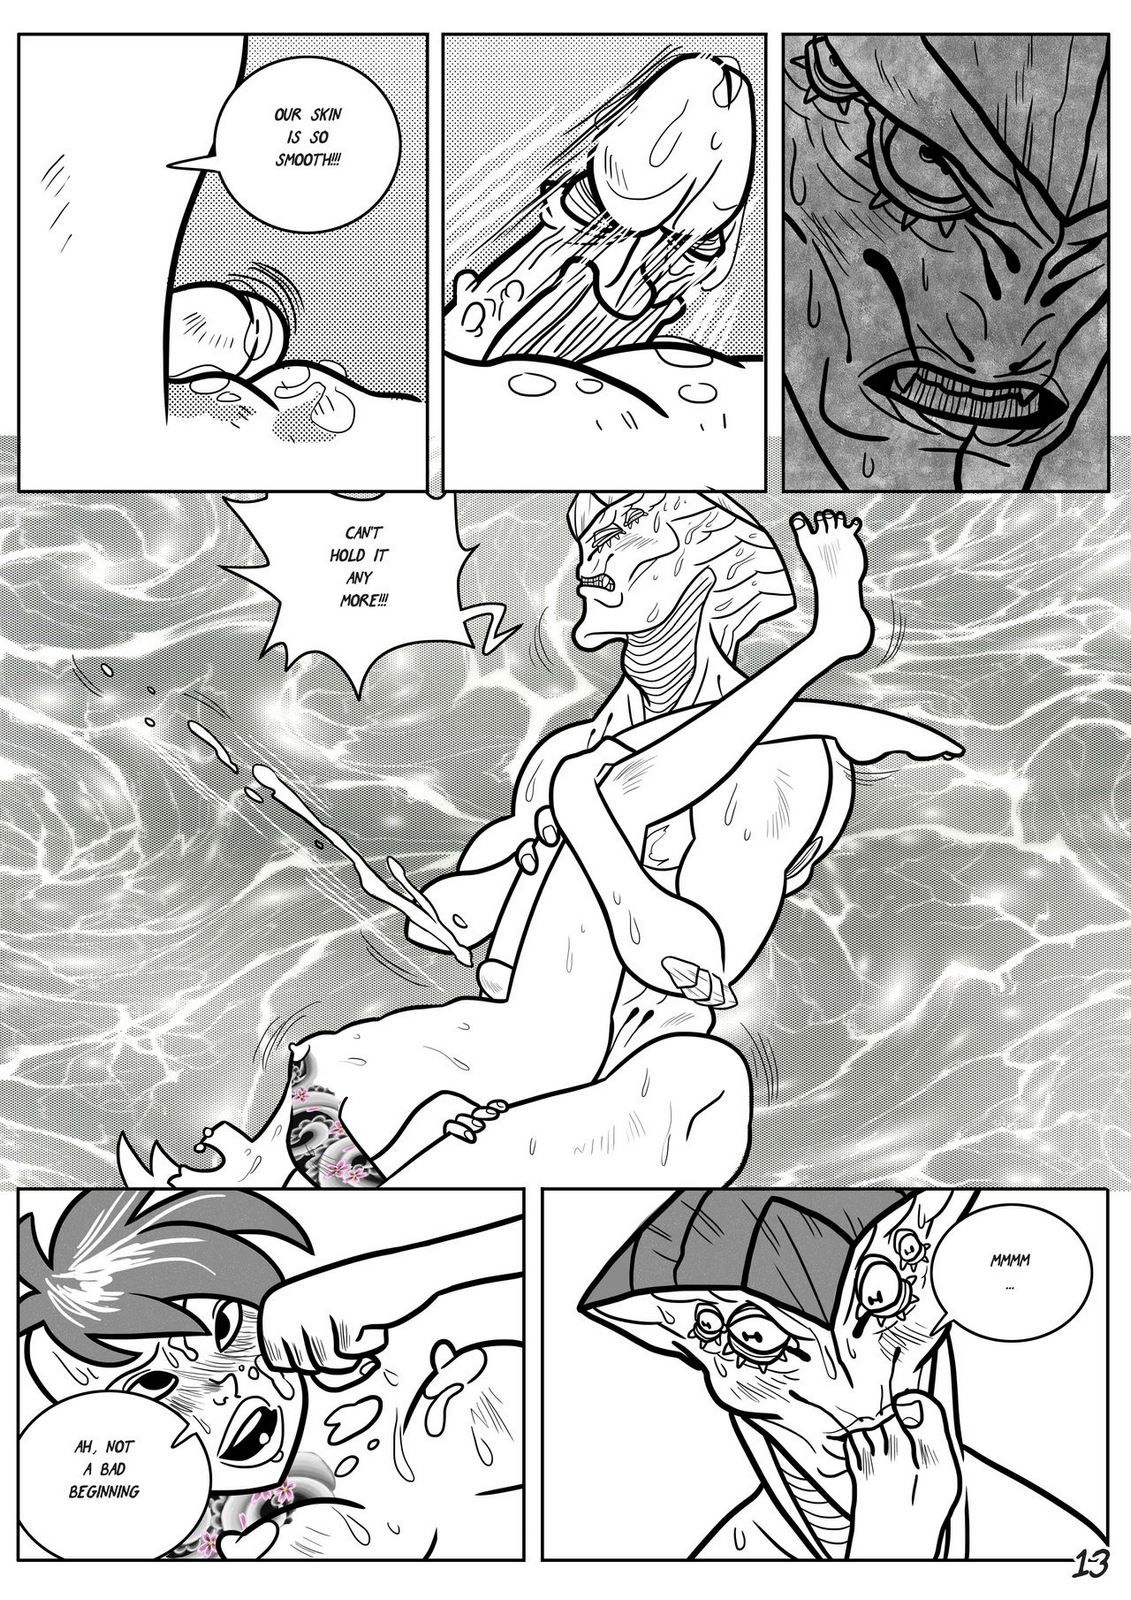 Javik Romance (Mass Effect) by VegaNya page 16